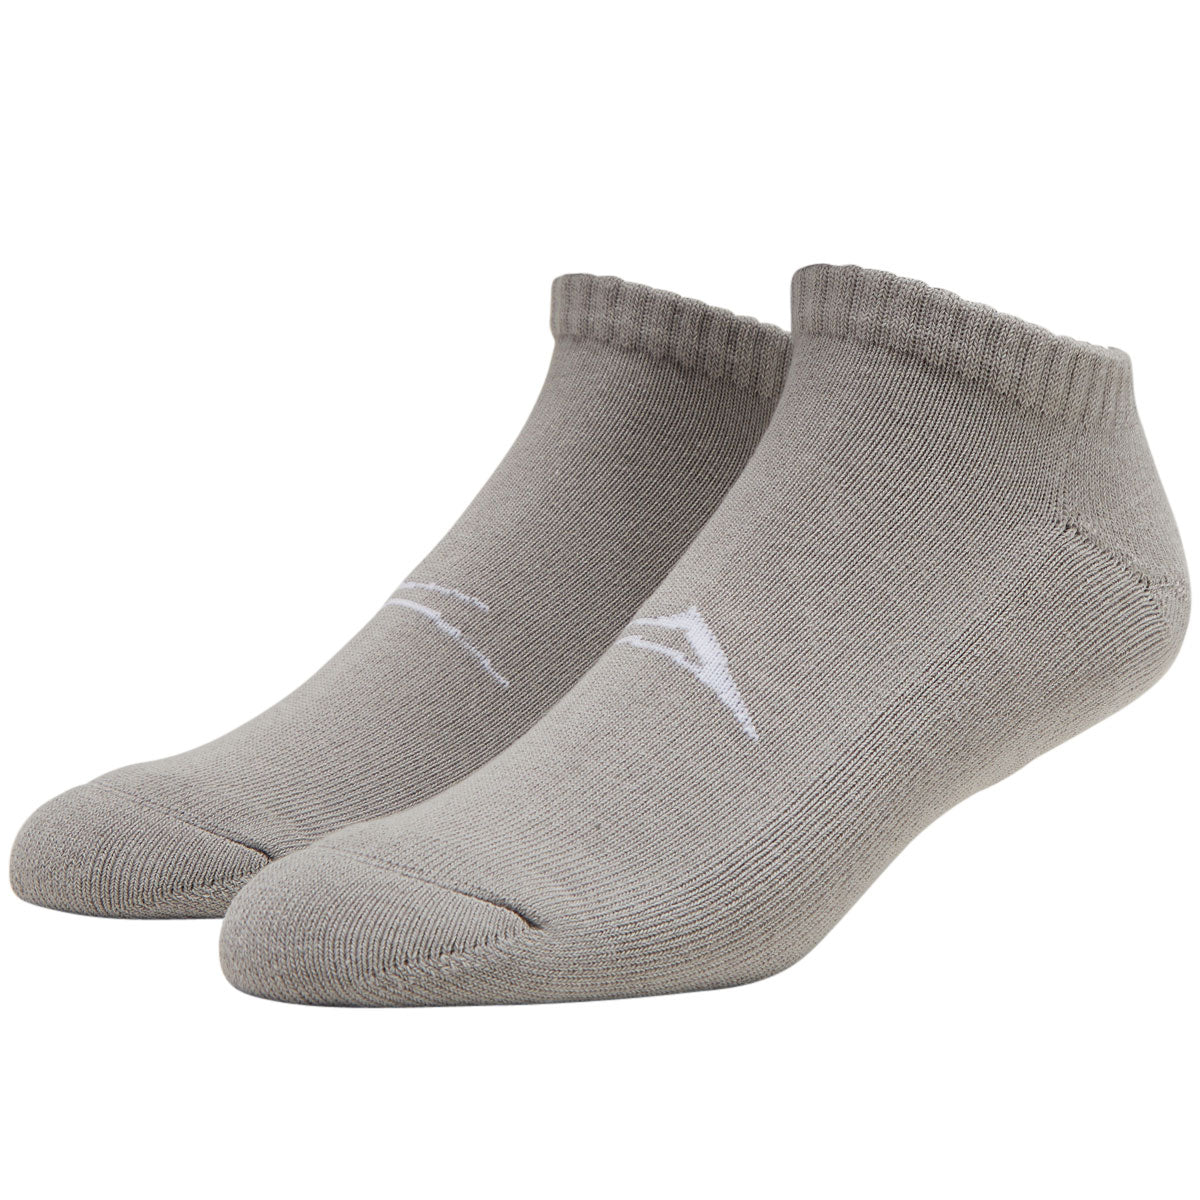 Lakai Hidden Socks - Charcoal image 1